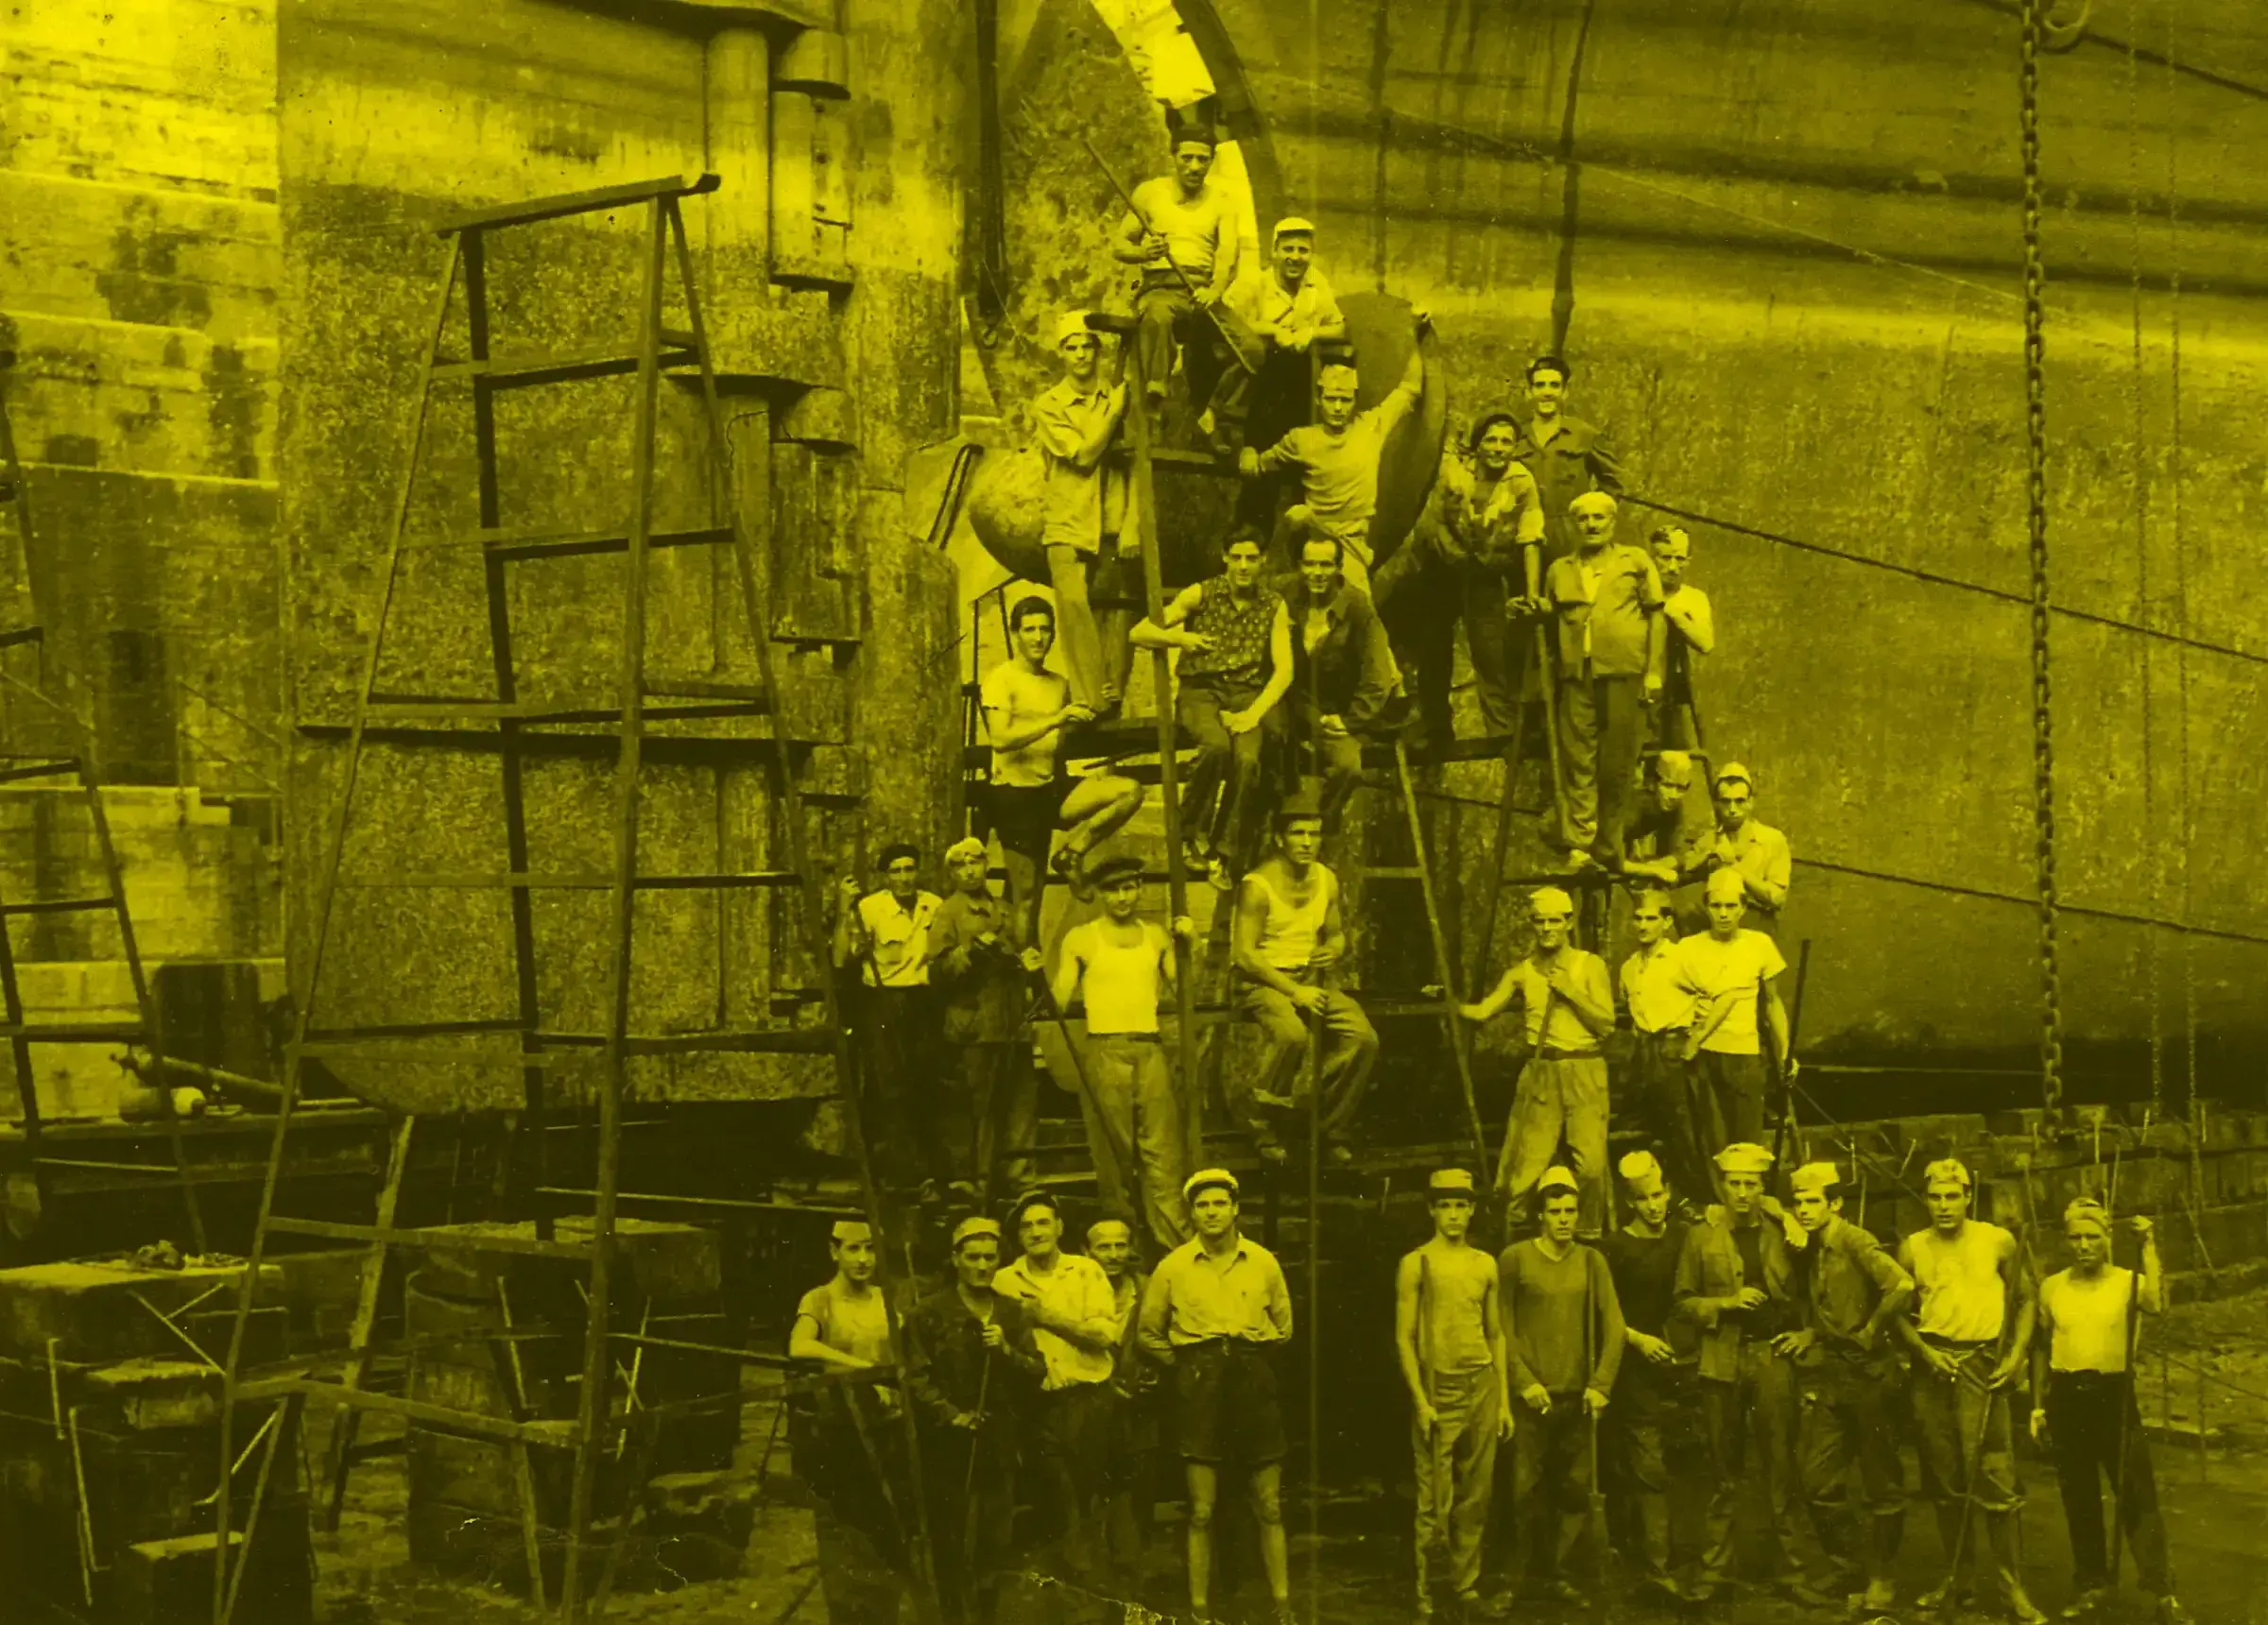 Gli ultimi arsenalotti - Immagine tematica: un gruppo di uomini, uno sopra l'altro a formare una piramide, al fianco di una chiglia navale. La foto è con dominante di colore giallo.